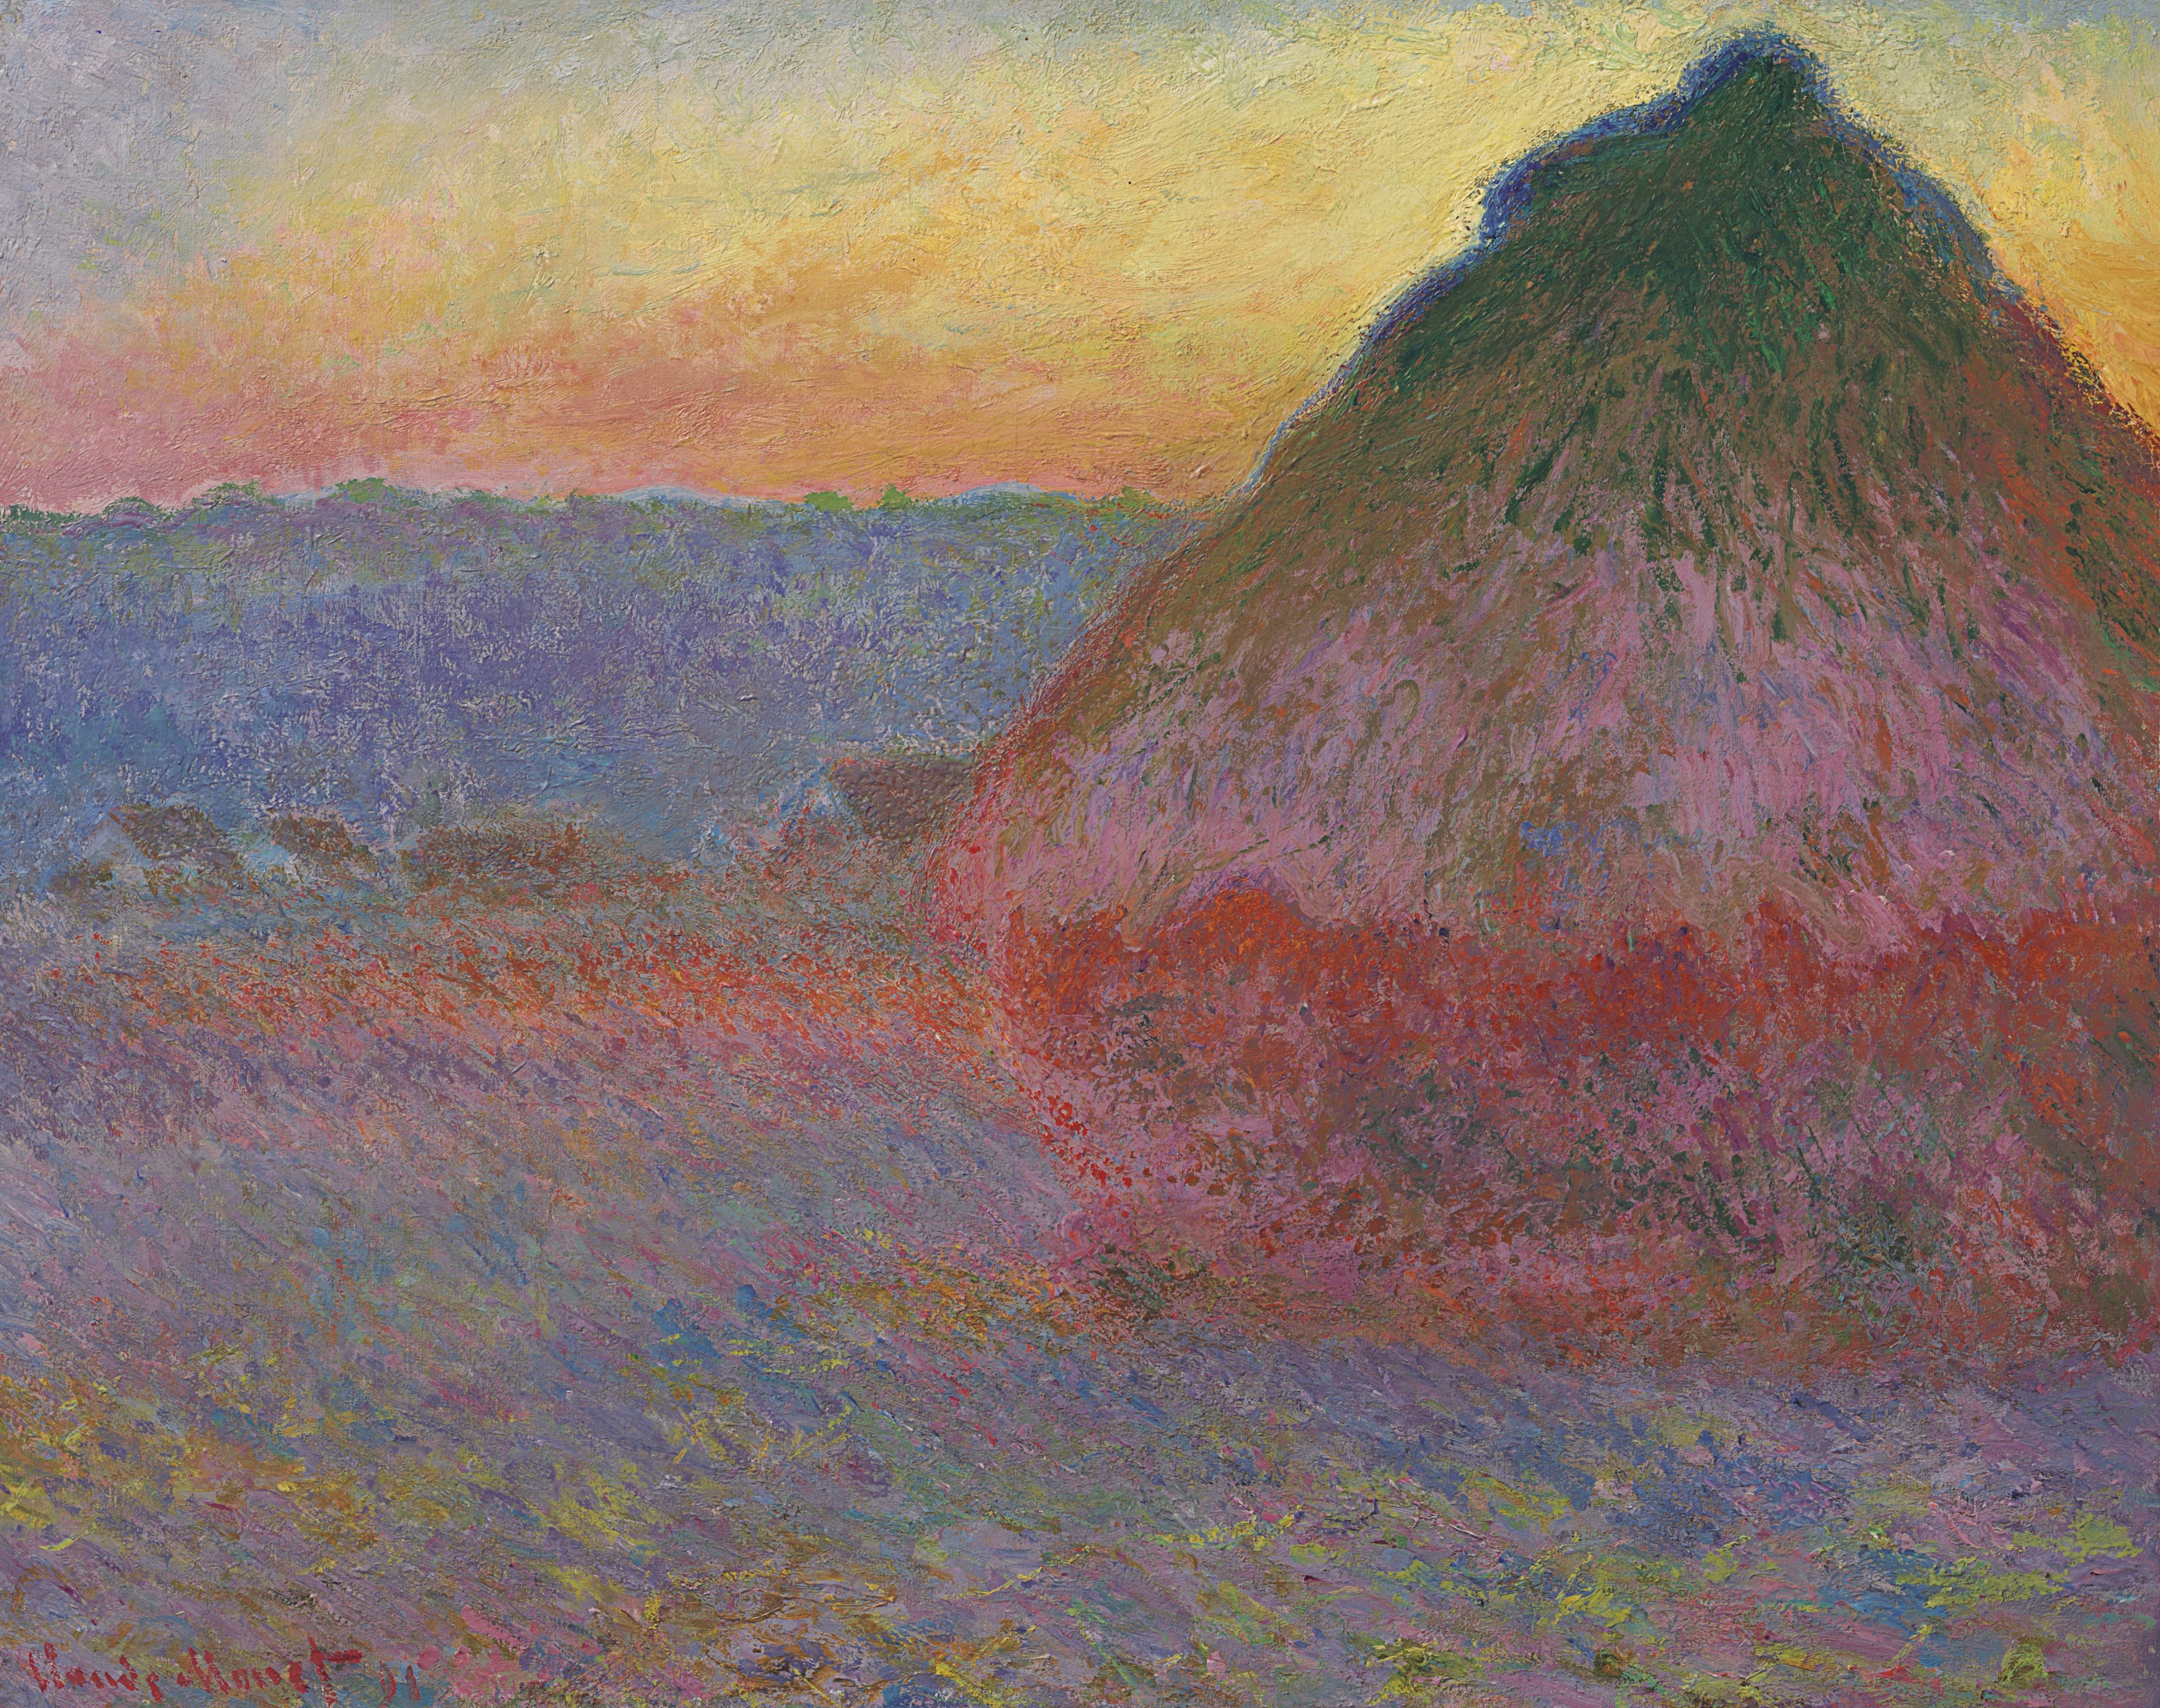 Saman Yığınları by Claude Monet - 1890 özel koleksiyon